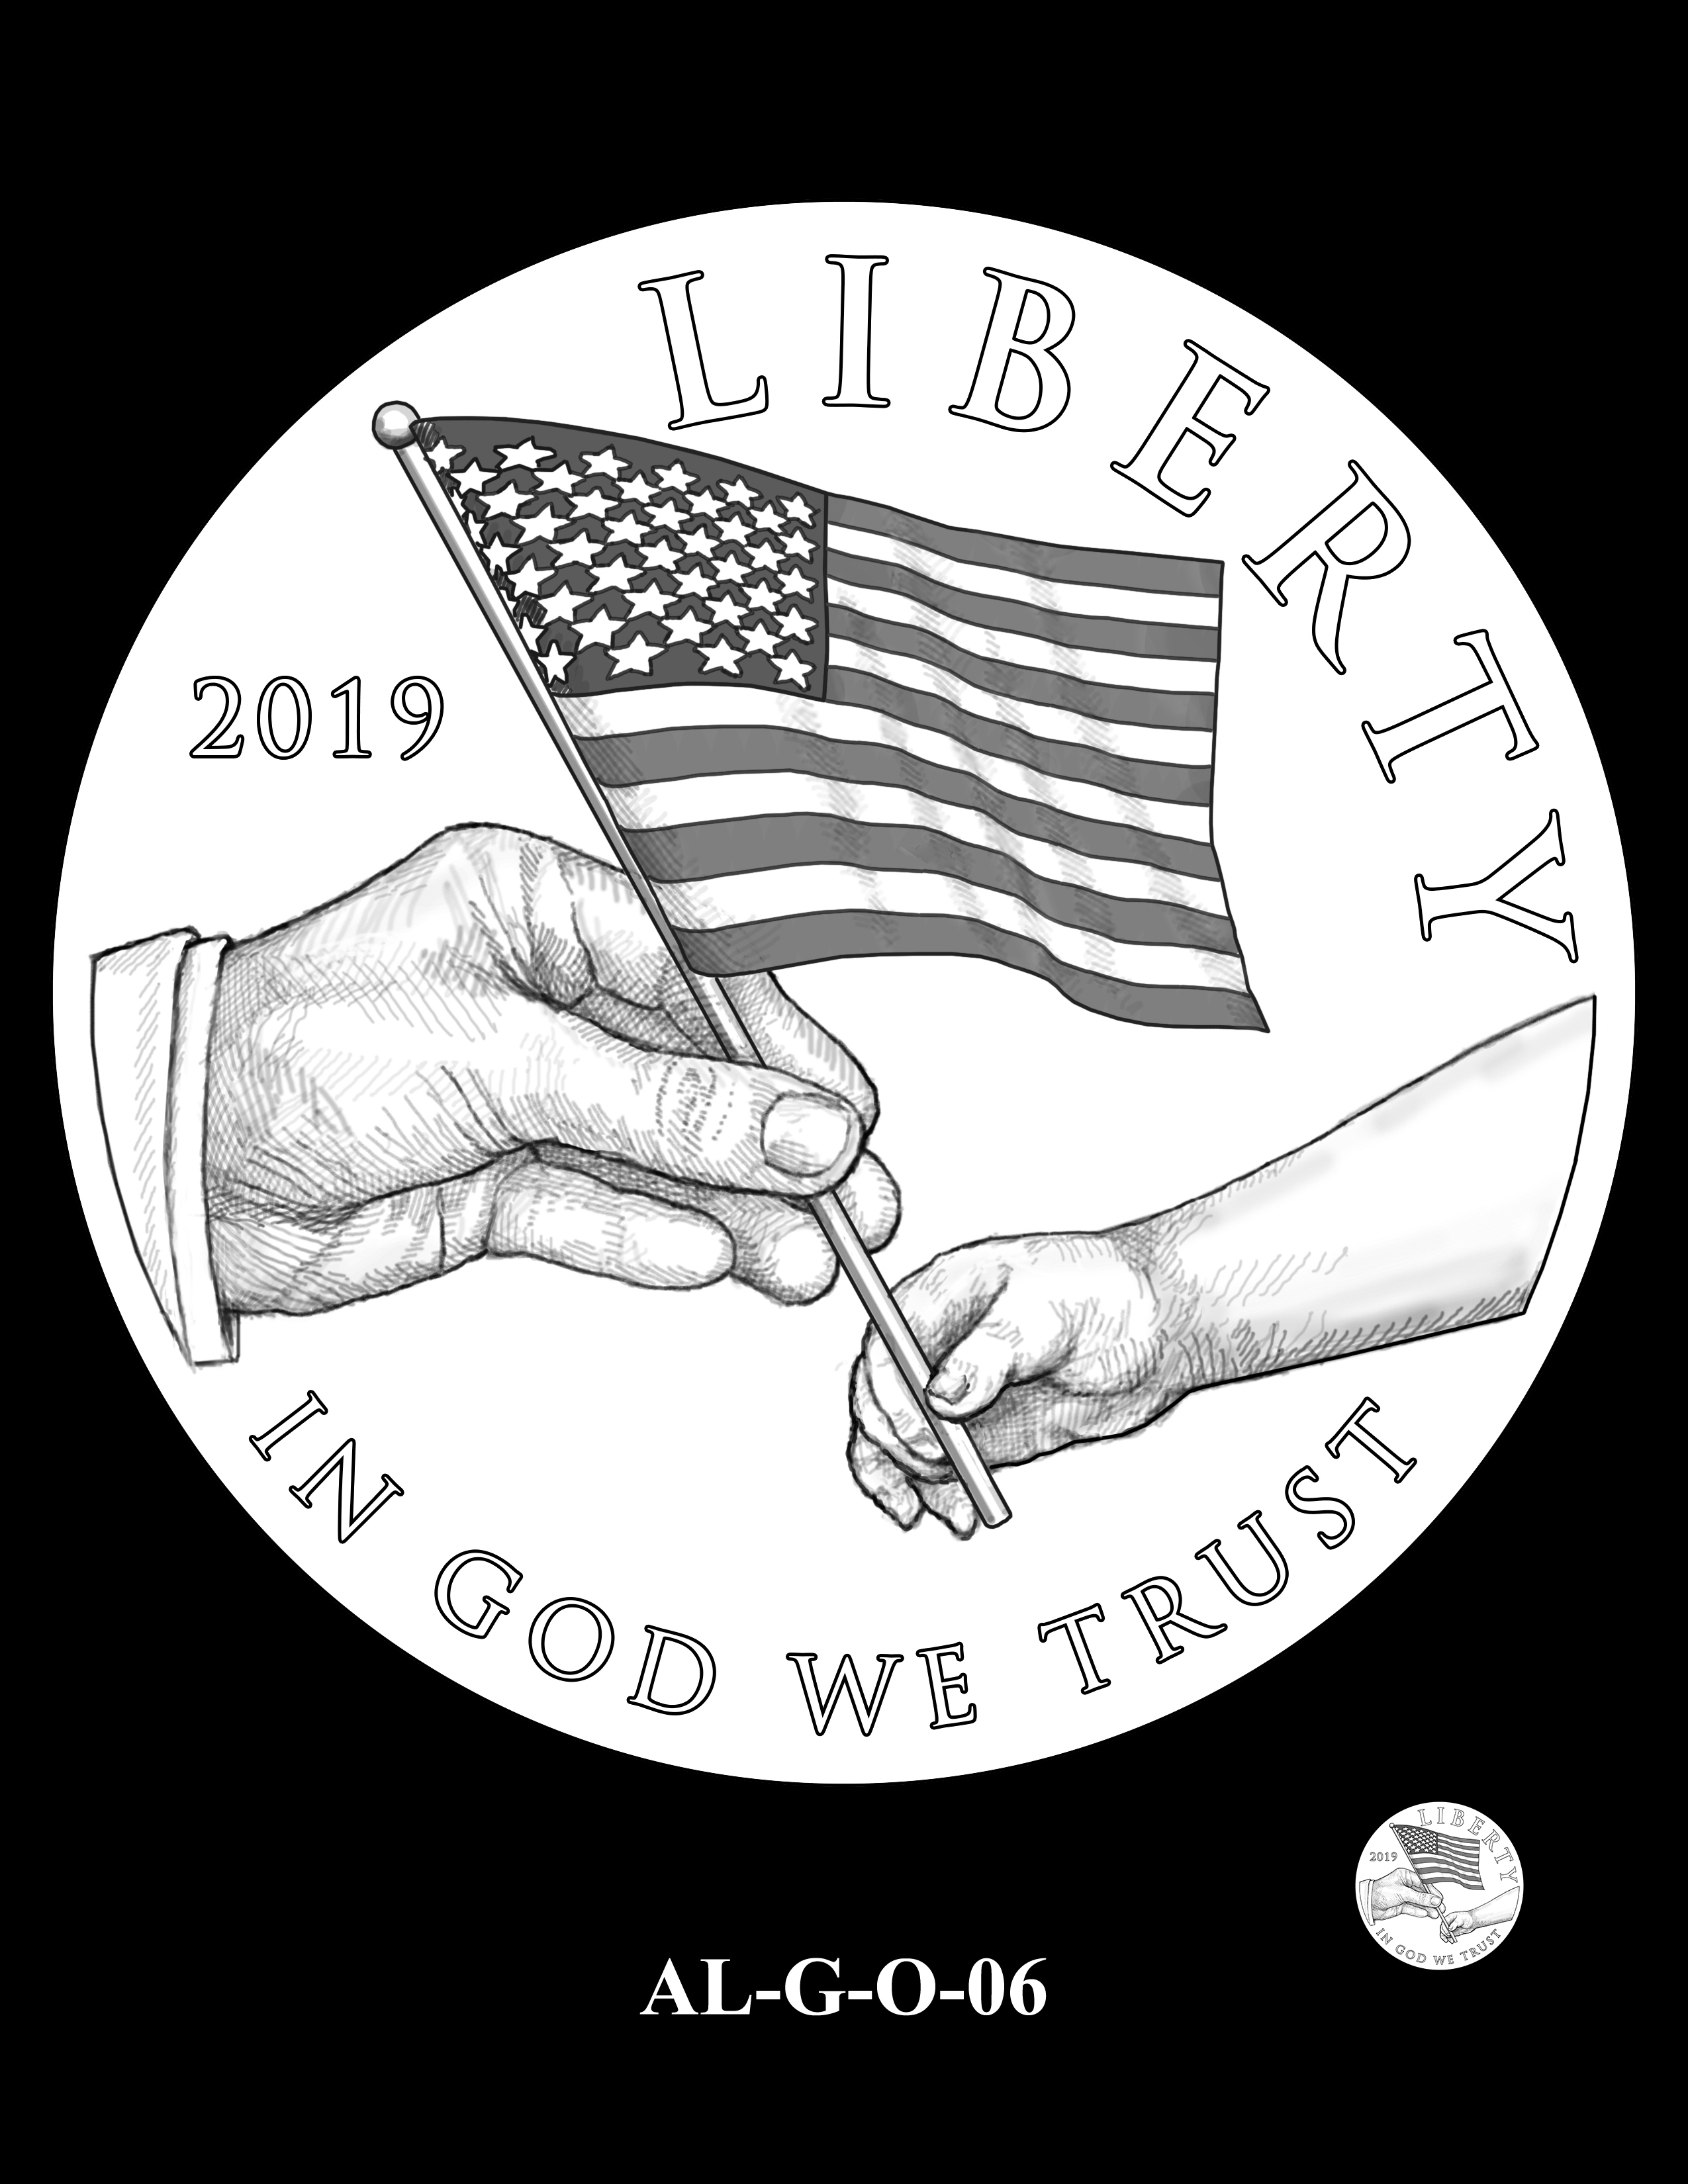 AL-G-O-06 -- 2019 American Legion 100th Anniversary Commemorative Coin Program - Gold Obverse